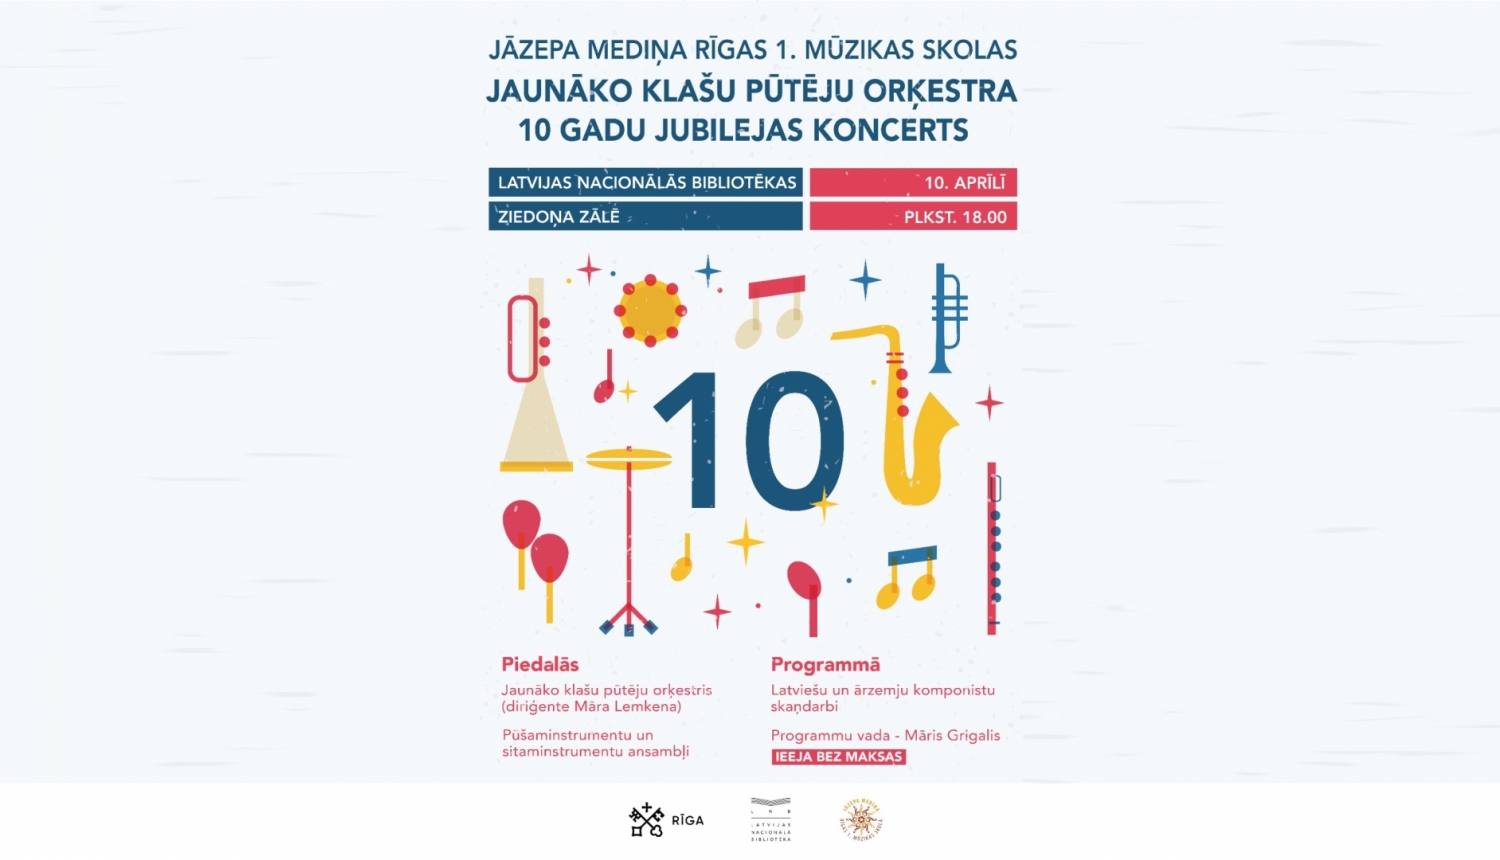 Jāzepa Mediņa Rīgas 1. mūzikas skolas Jaunāko klašu pūtēju orķestris aicina uz 10 gadu jubilejas koncertu